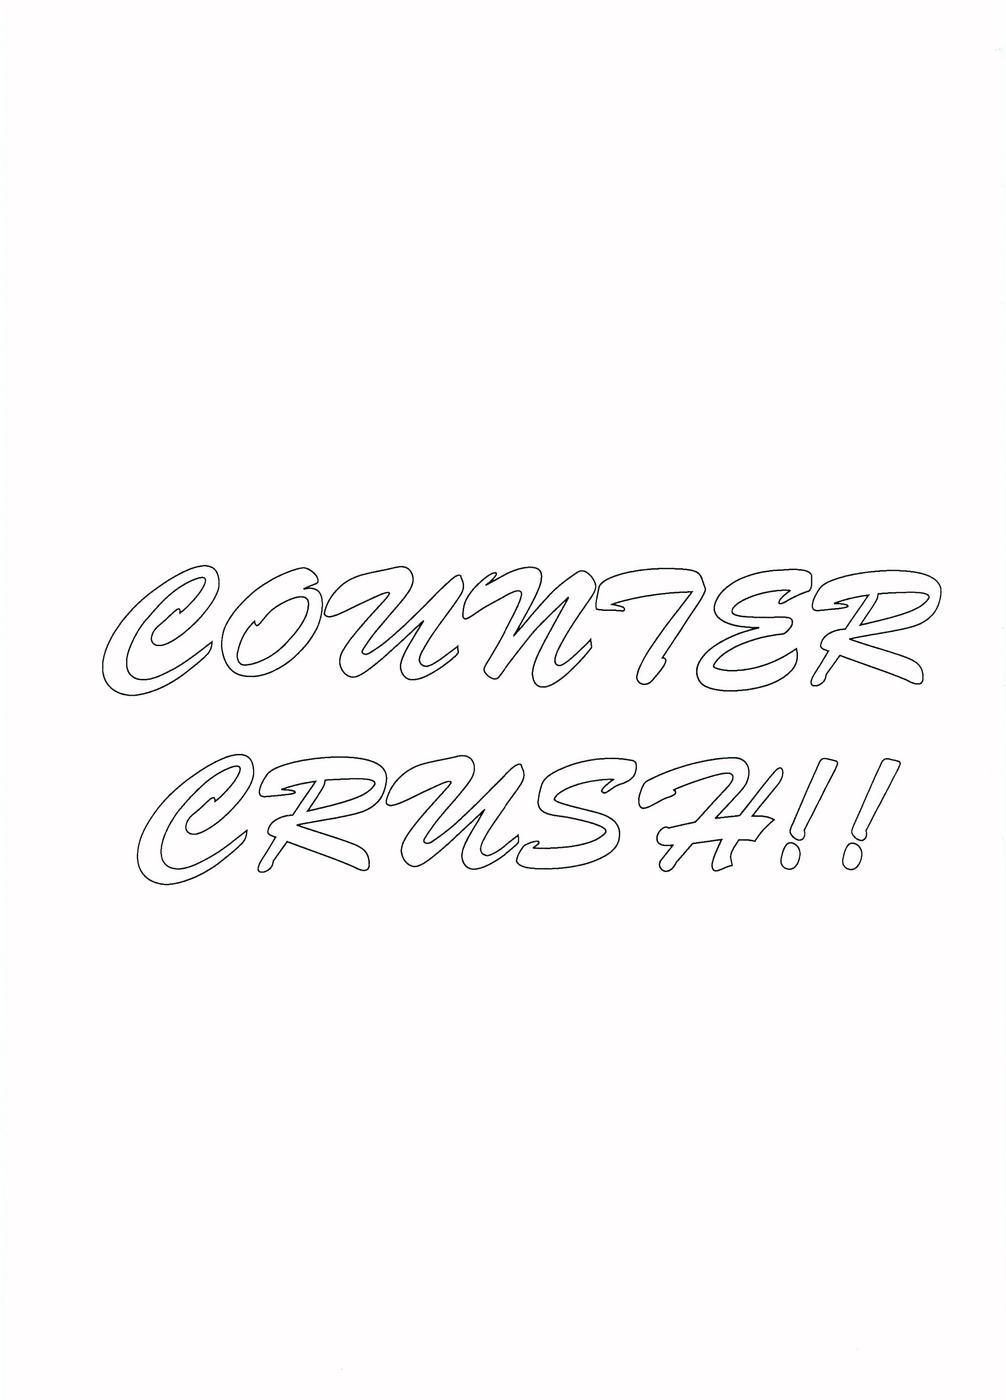 Counter Crash!! 1